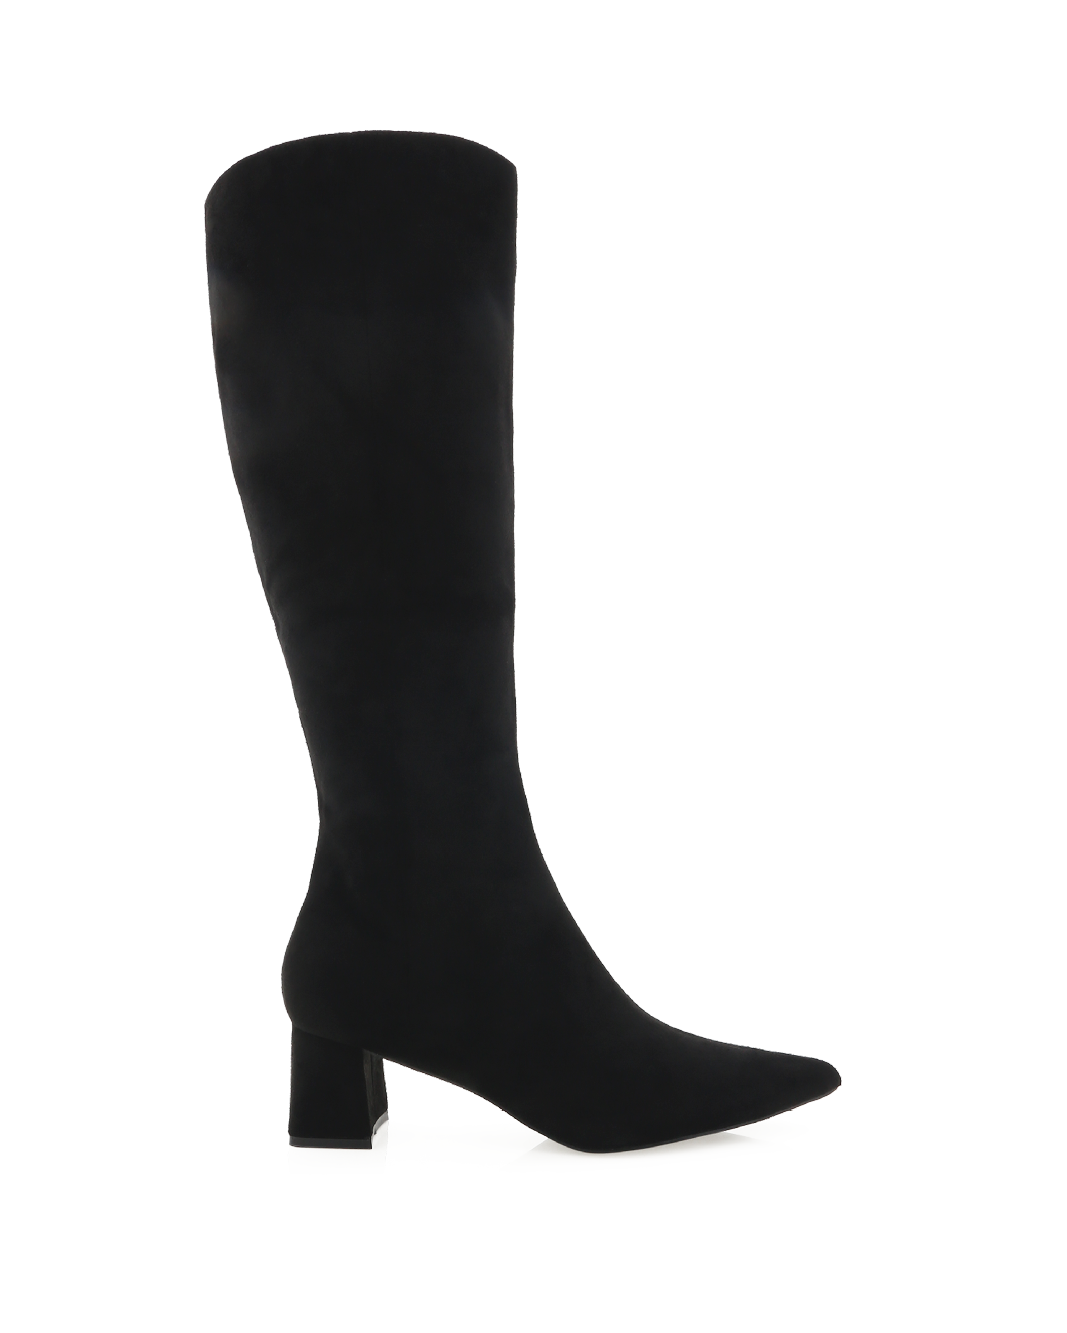 QUAZY - BLACK SUEDE-Boots-Billini-Billini